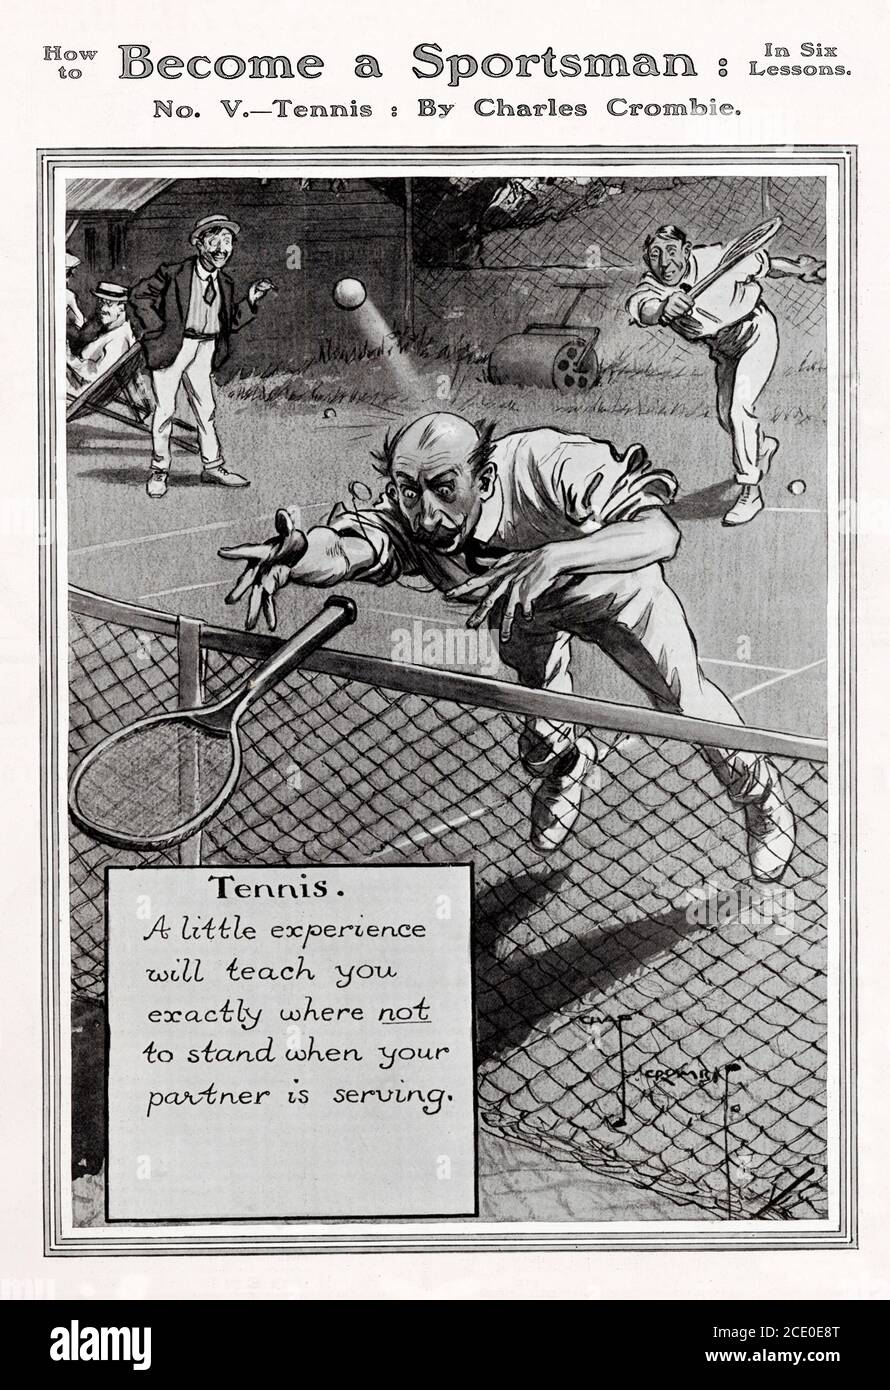 Werden Sie ein Sportler, Tennis Beratung in Cartoon-Form von Charles Crombie, EIN wenig Erfahrung wird Ihnen genau lehren, wo nicht zu stehen, wenn Ihr Partner dient Stockfoto